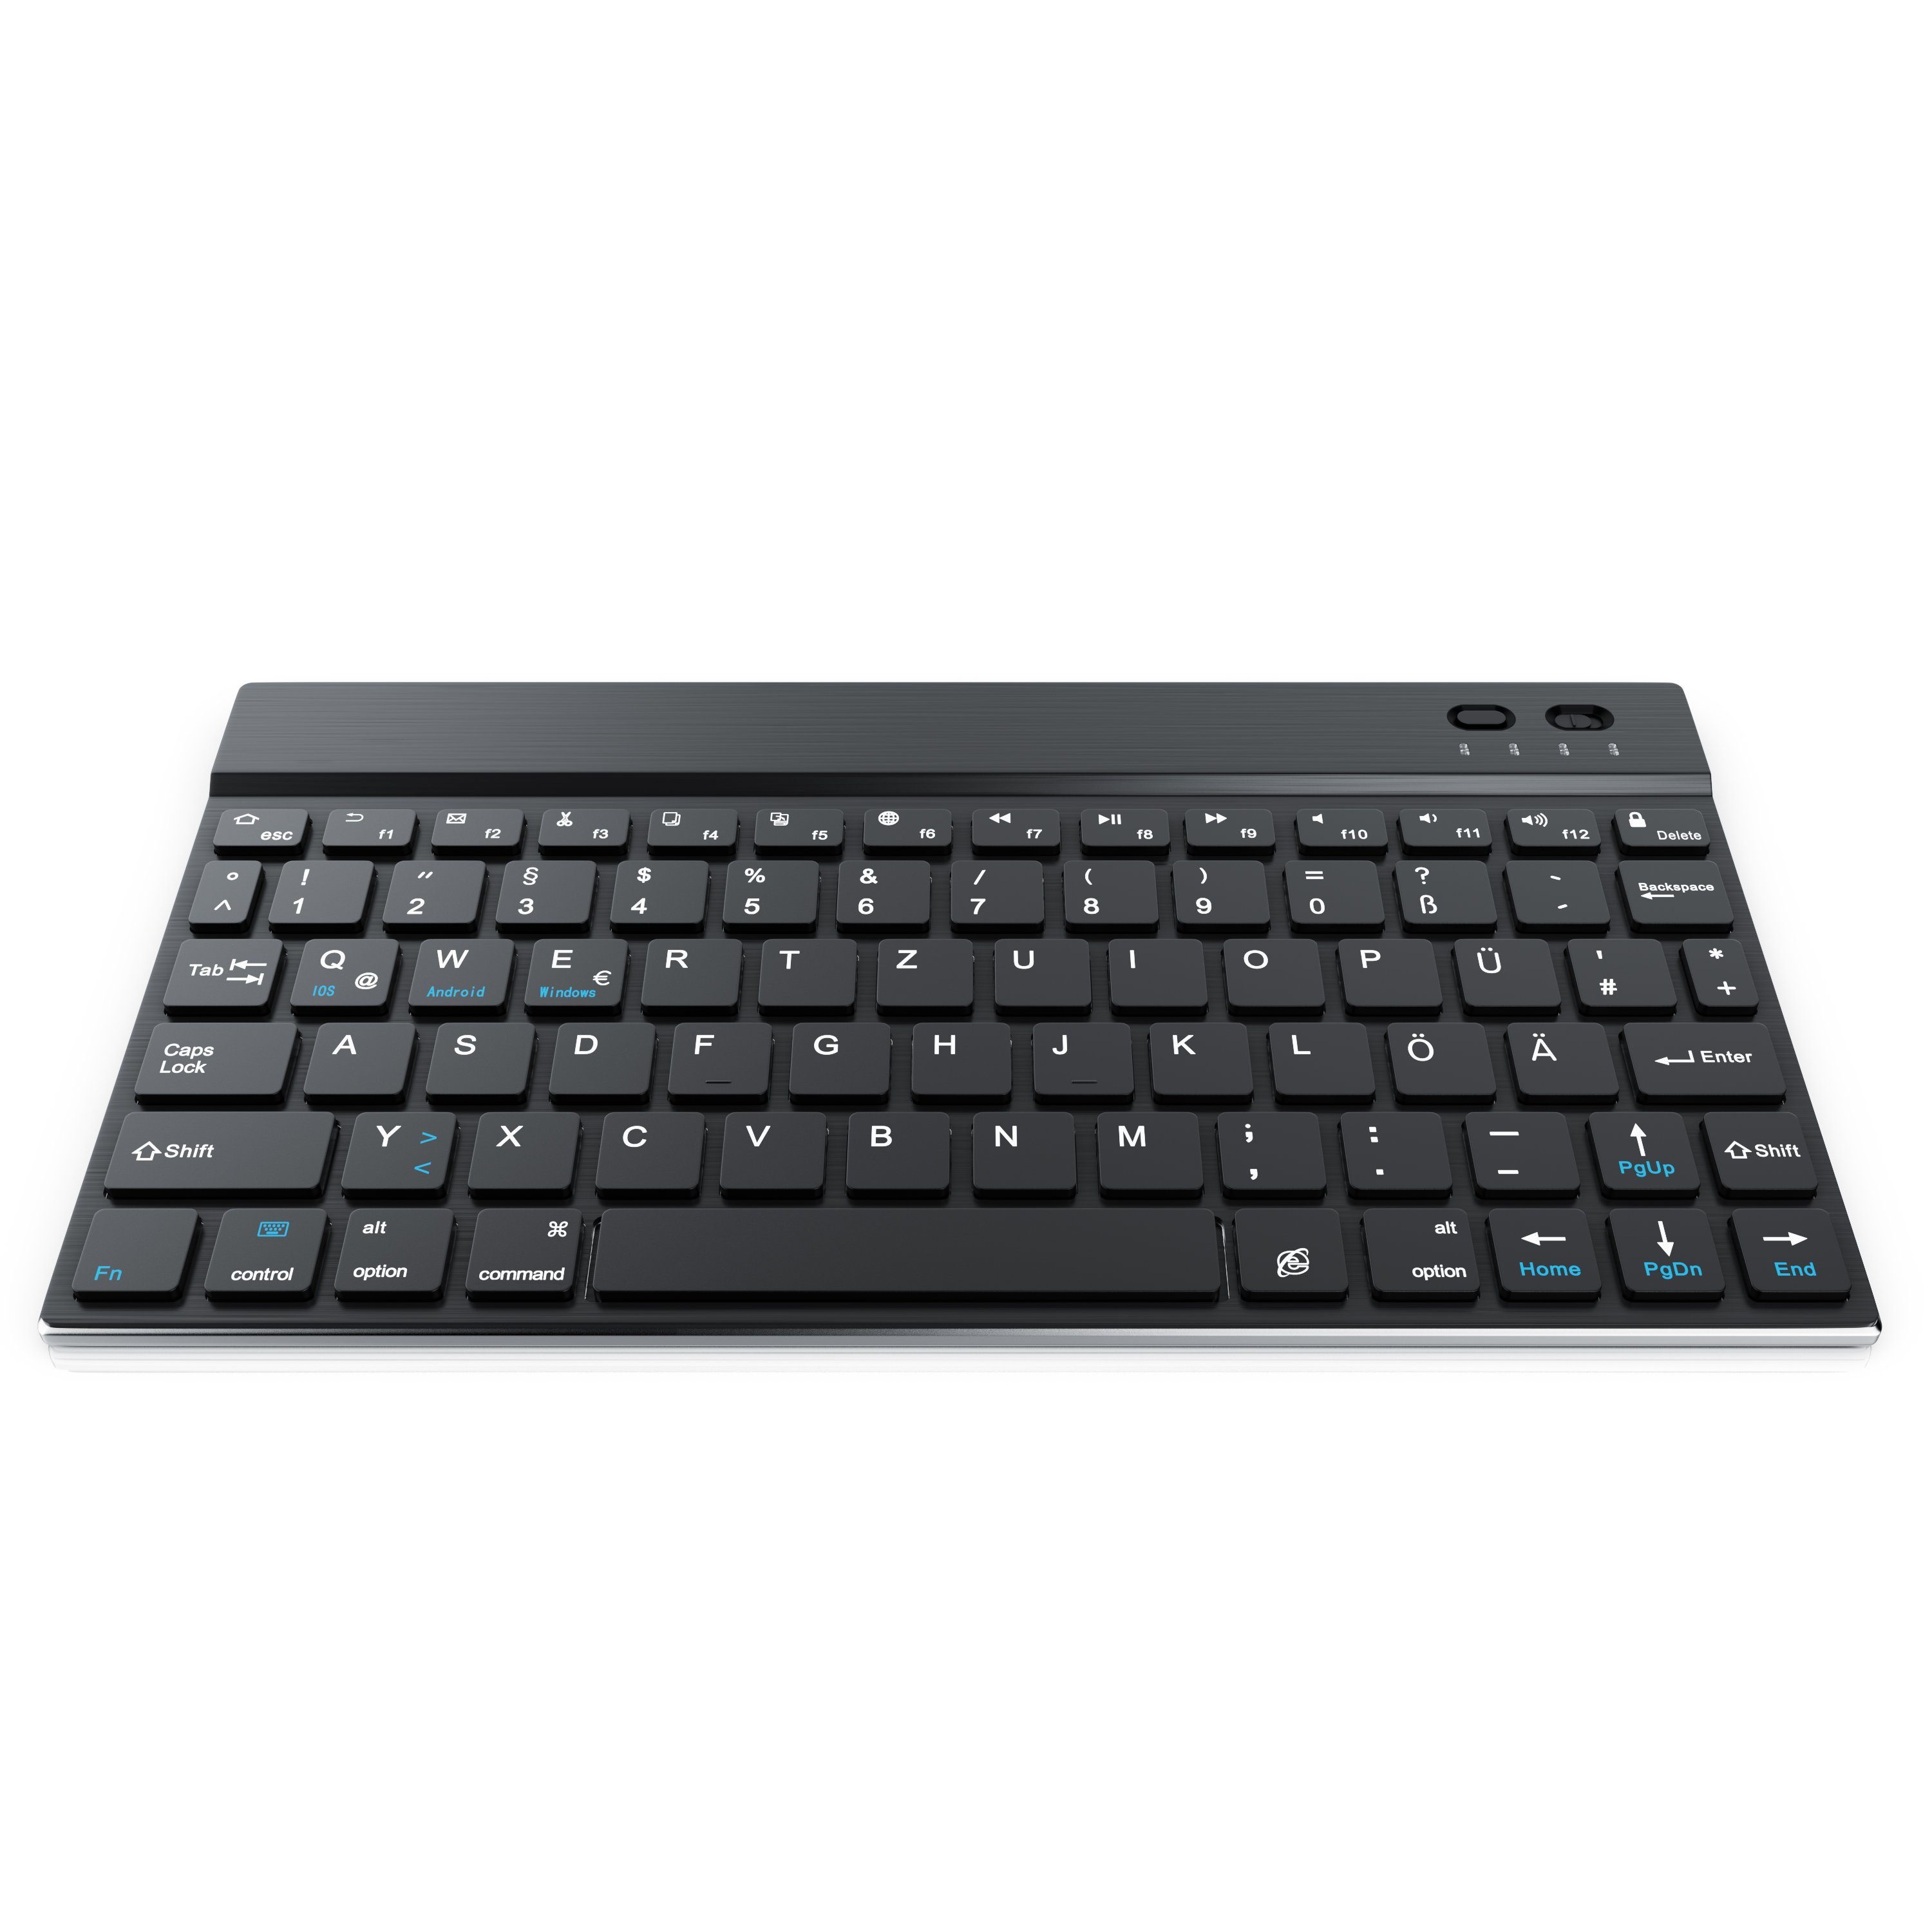 CSL Wireless-Tastatur (Ultra Slim Keyboard, Alugehäuse, 3.0) Deutsches Layout, Bluetooth, schwarz/silber BT